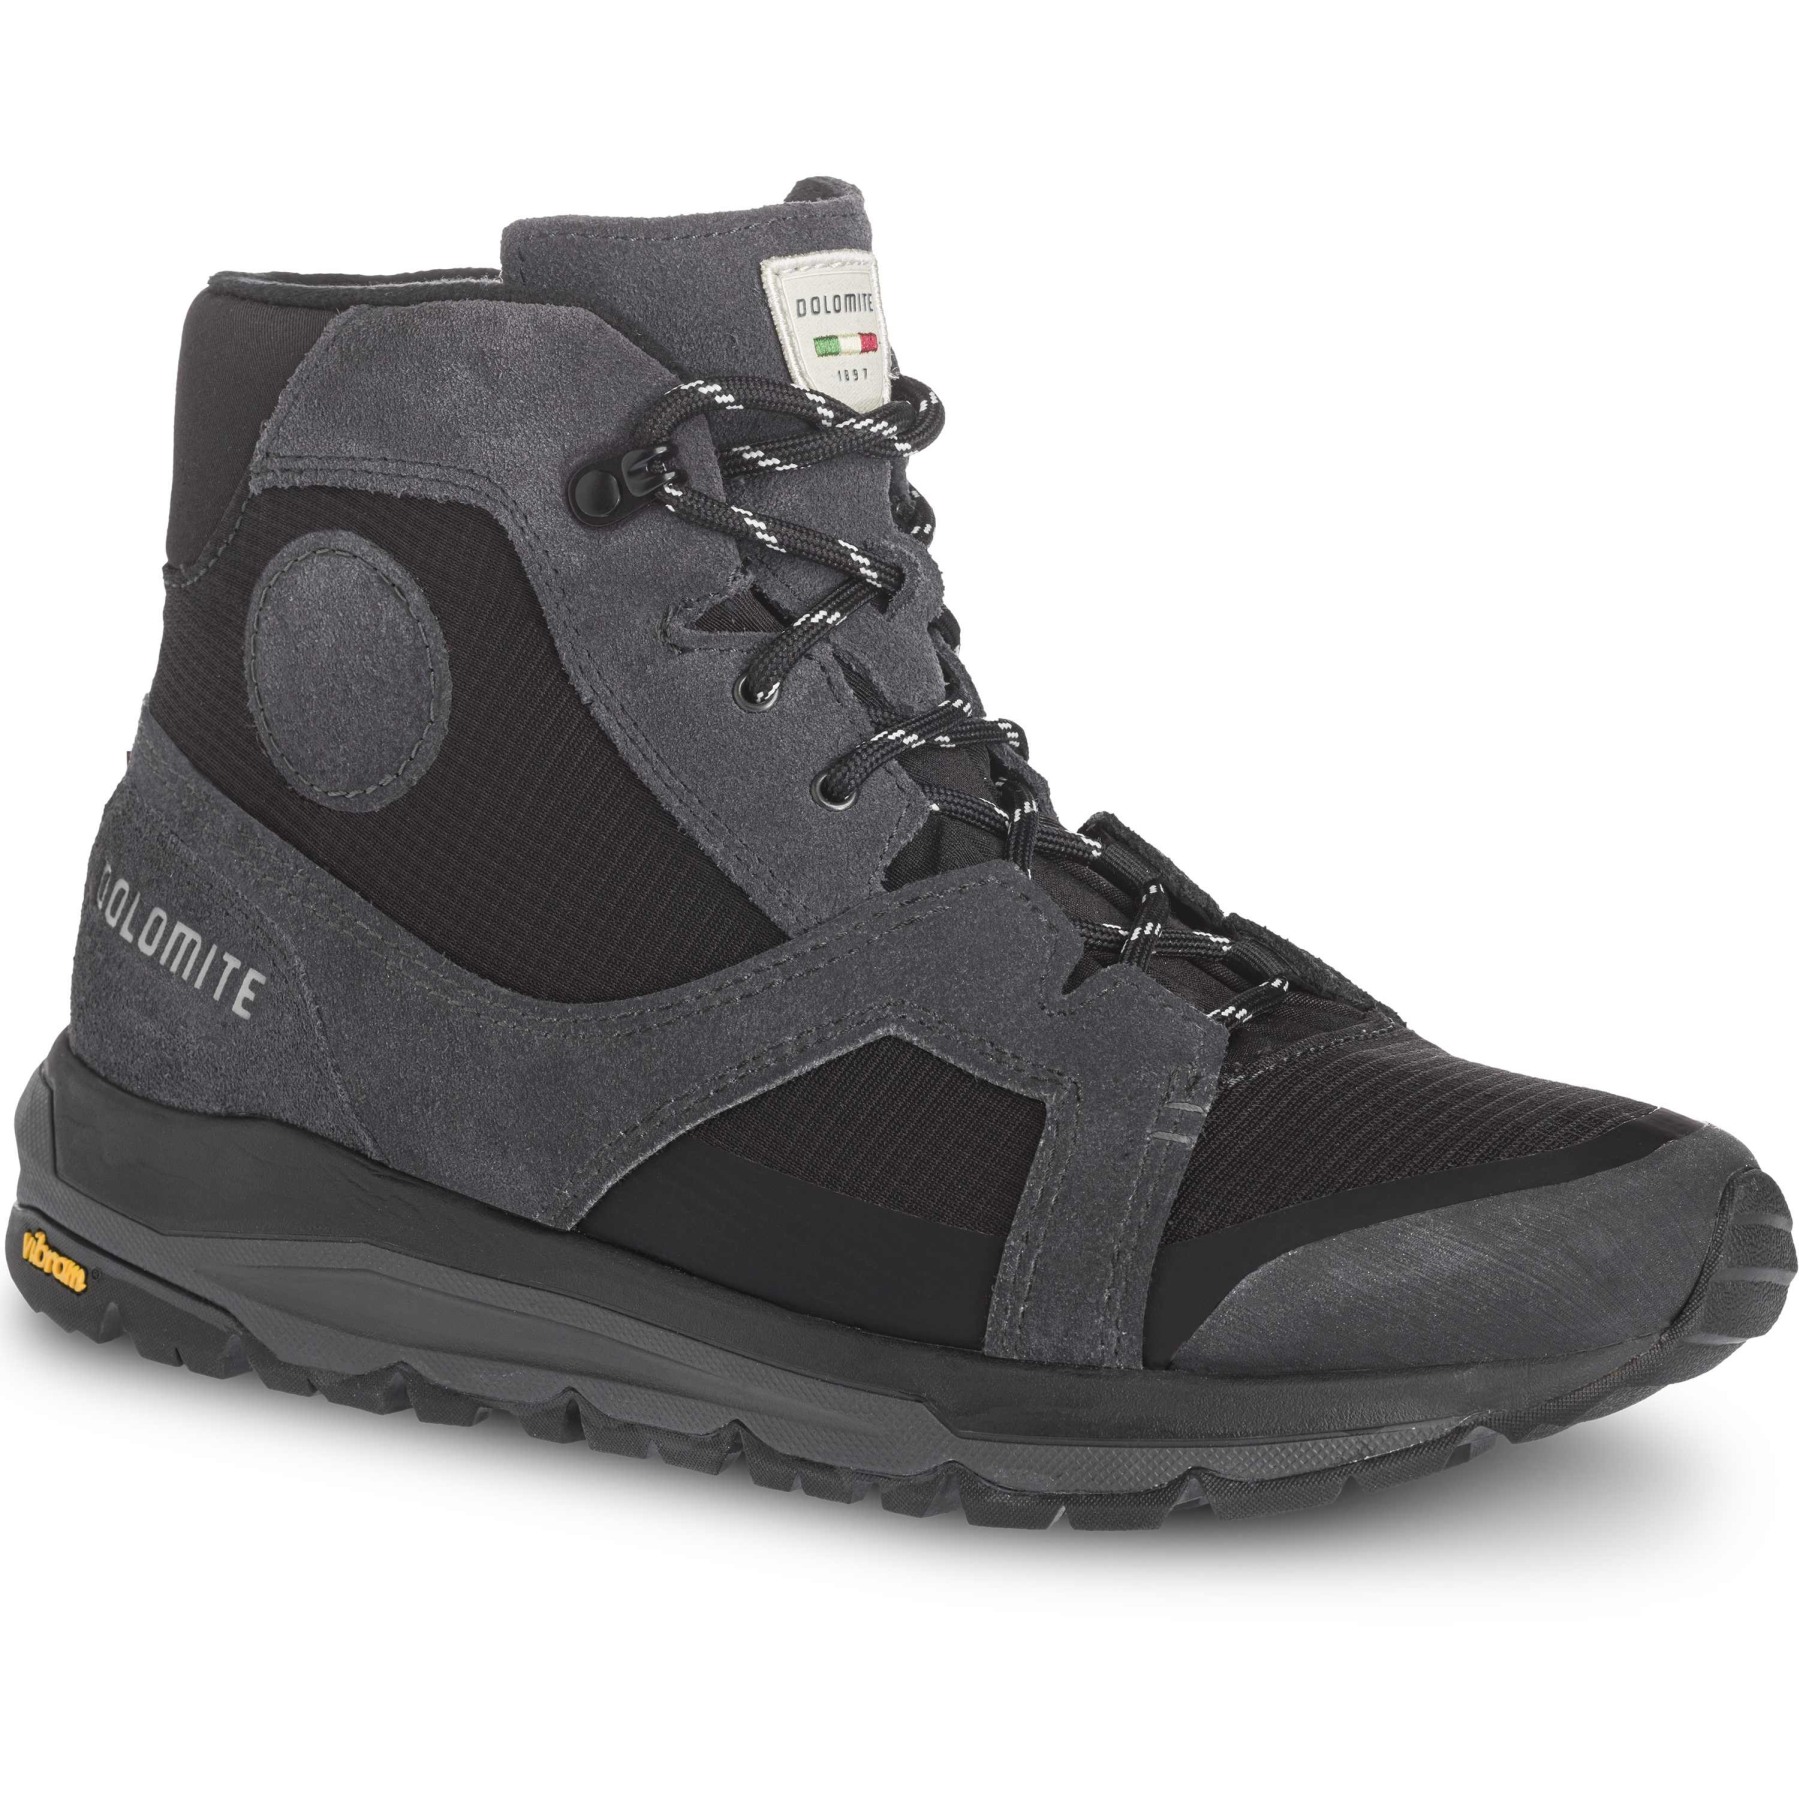 Produktbild von Dolomite Braies Warm WP Schuhe Herren - schwarz